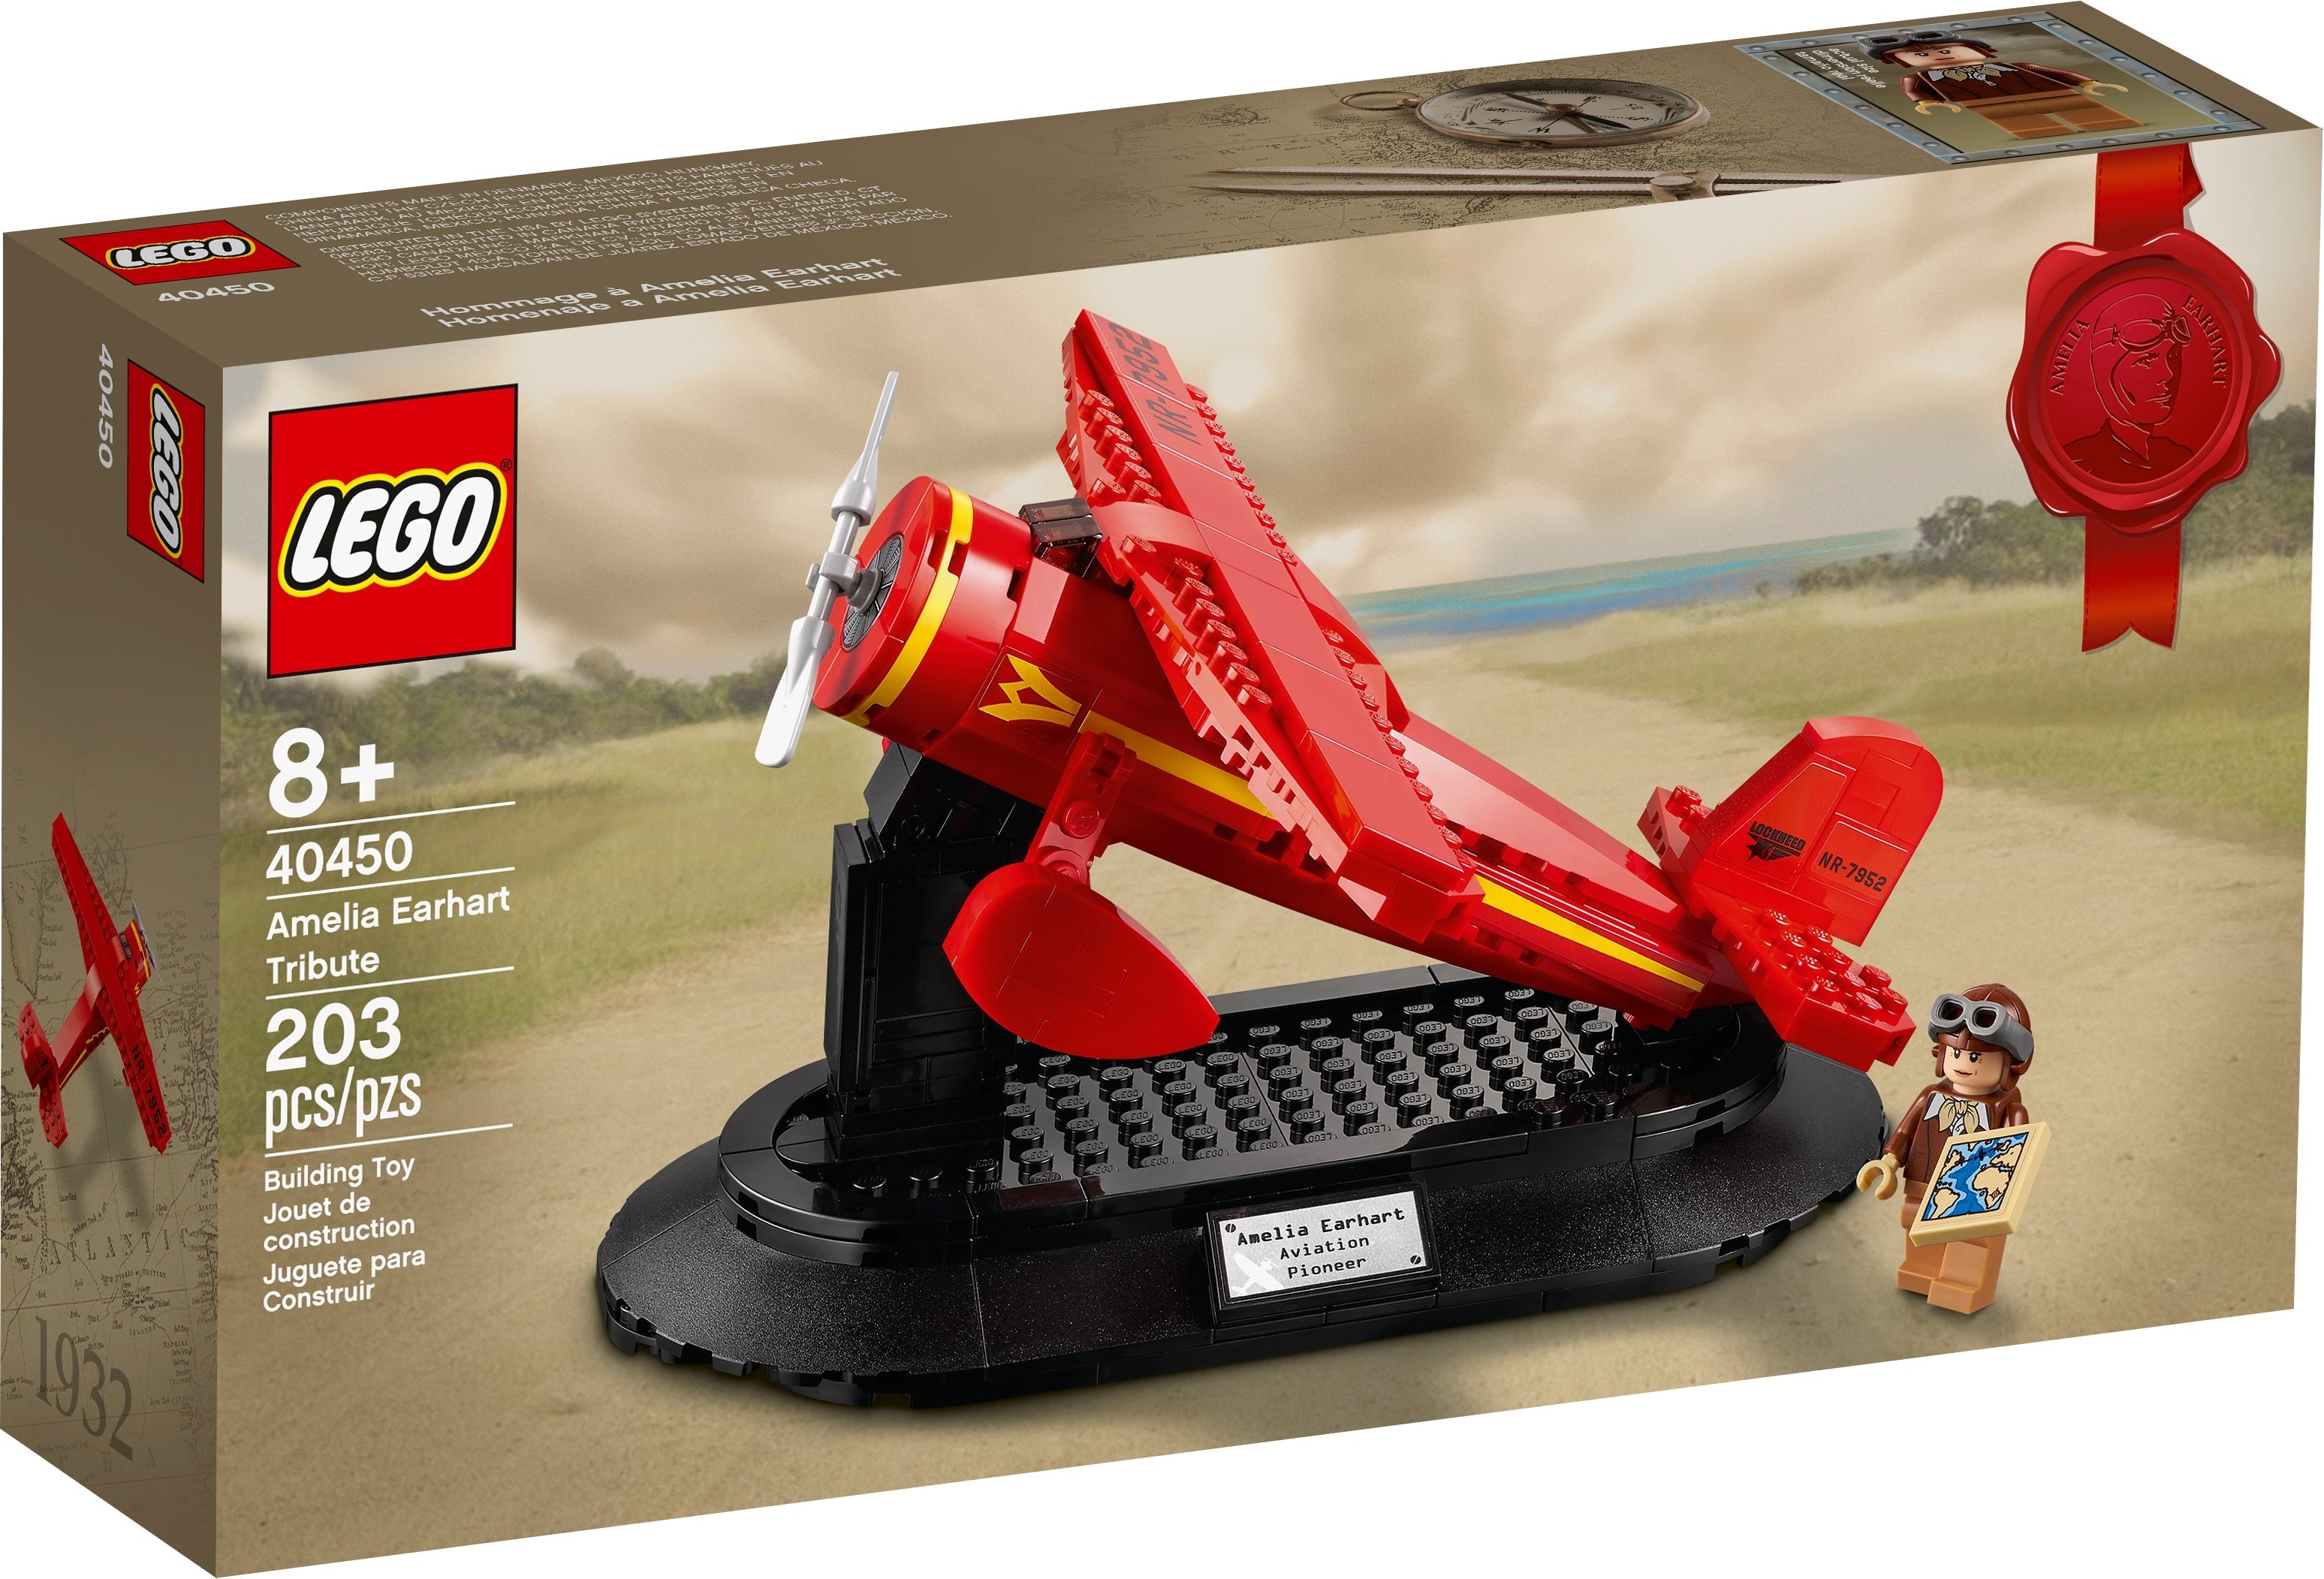 LEGO Hommage an Amelia Earhart (40450) - im GOLDSTIEN.SHOP verfügbar mit Gratisversand ab Schweizer Lager! (5702016910988)